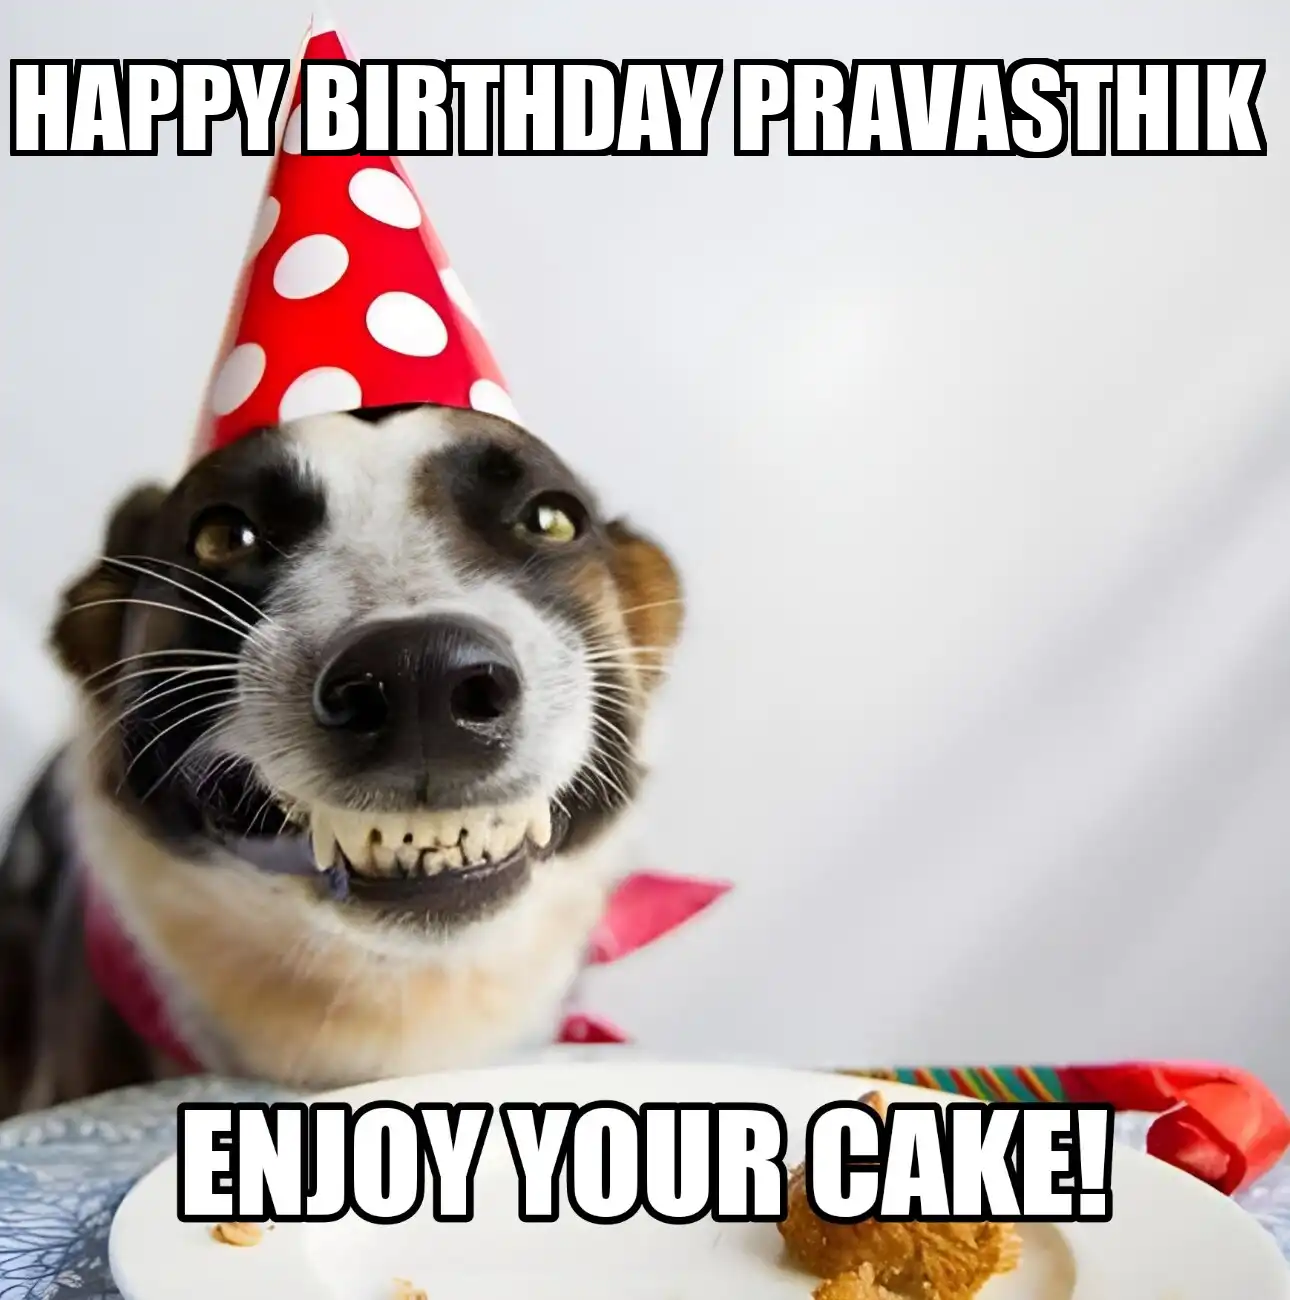 Happy Birthday Pravasthik Enjoy Your Cake Dog Meme